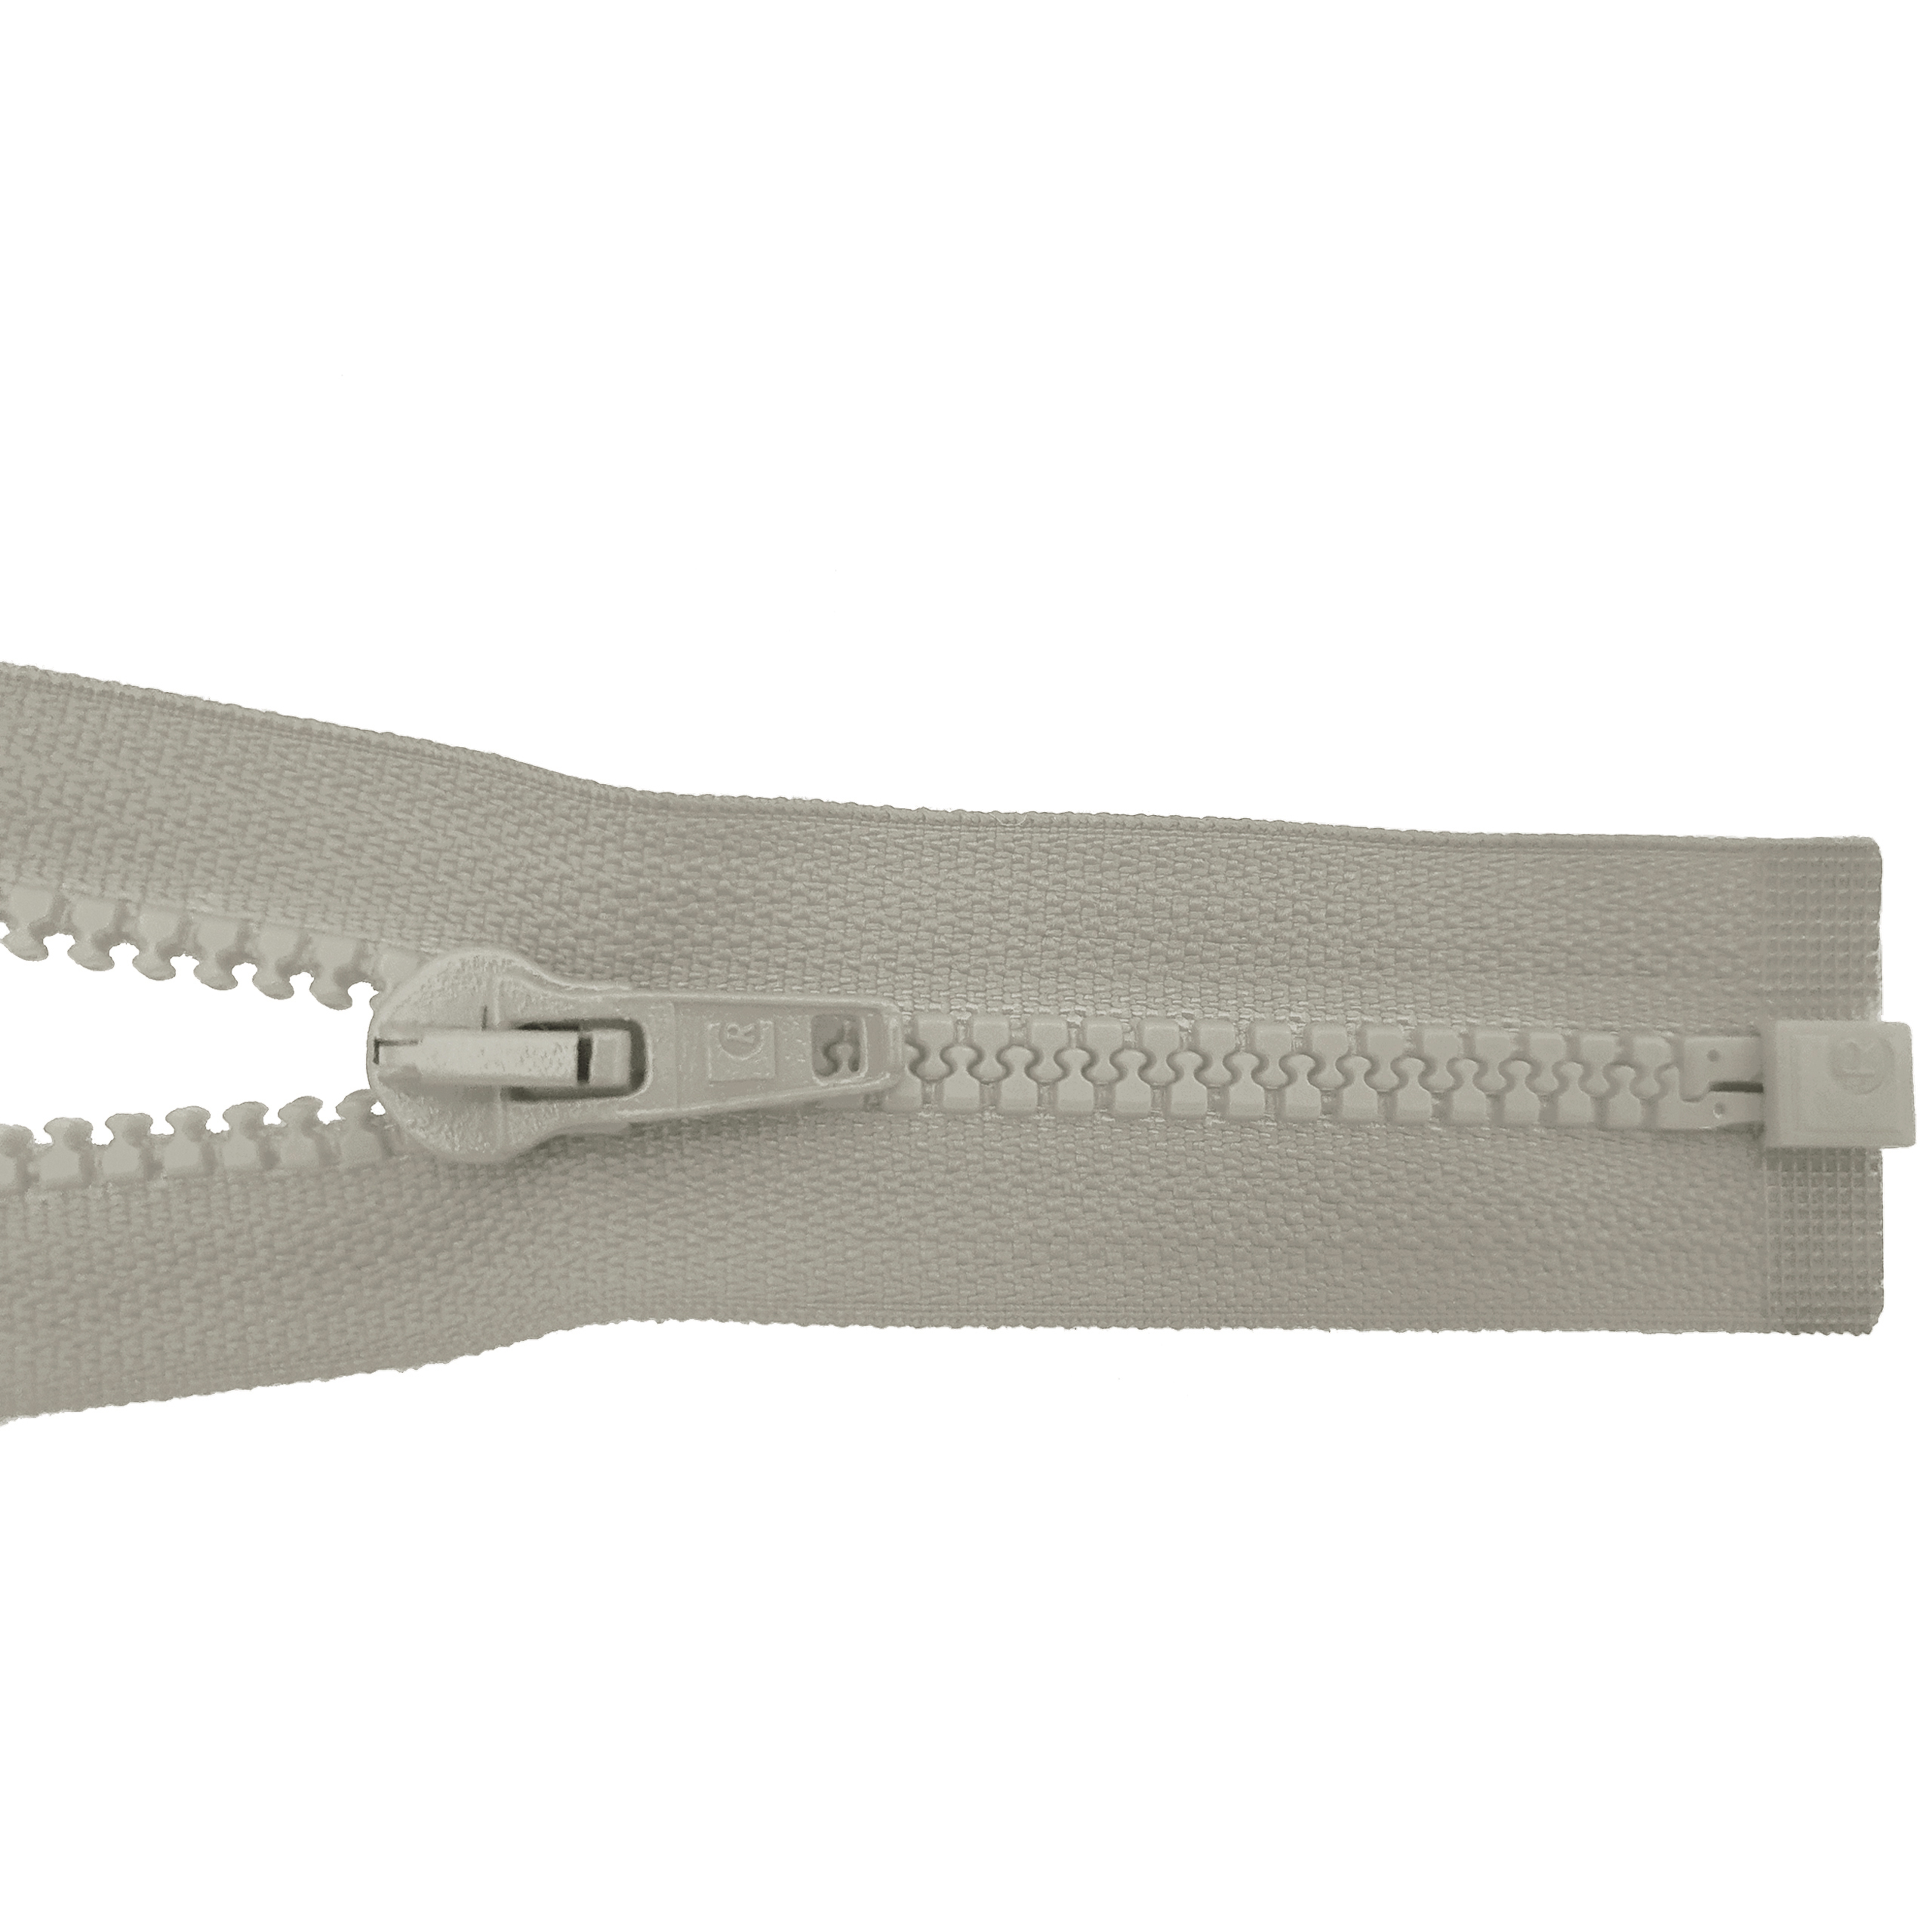 Reißverschluss 80cm, teilbar, Kstoff Zähne breit, beige-grau, hochwertiger Marken-Reißverschluss von Rubi/Barcelona